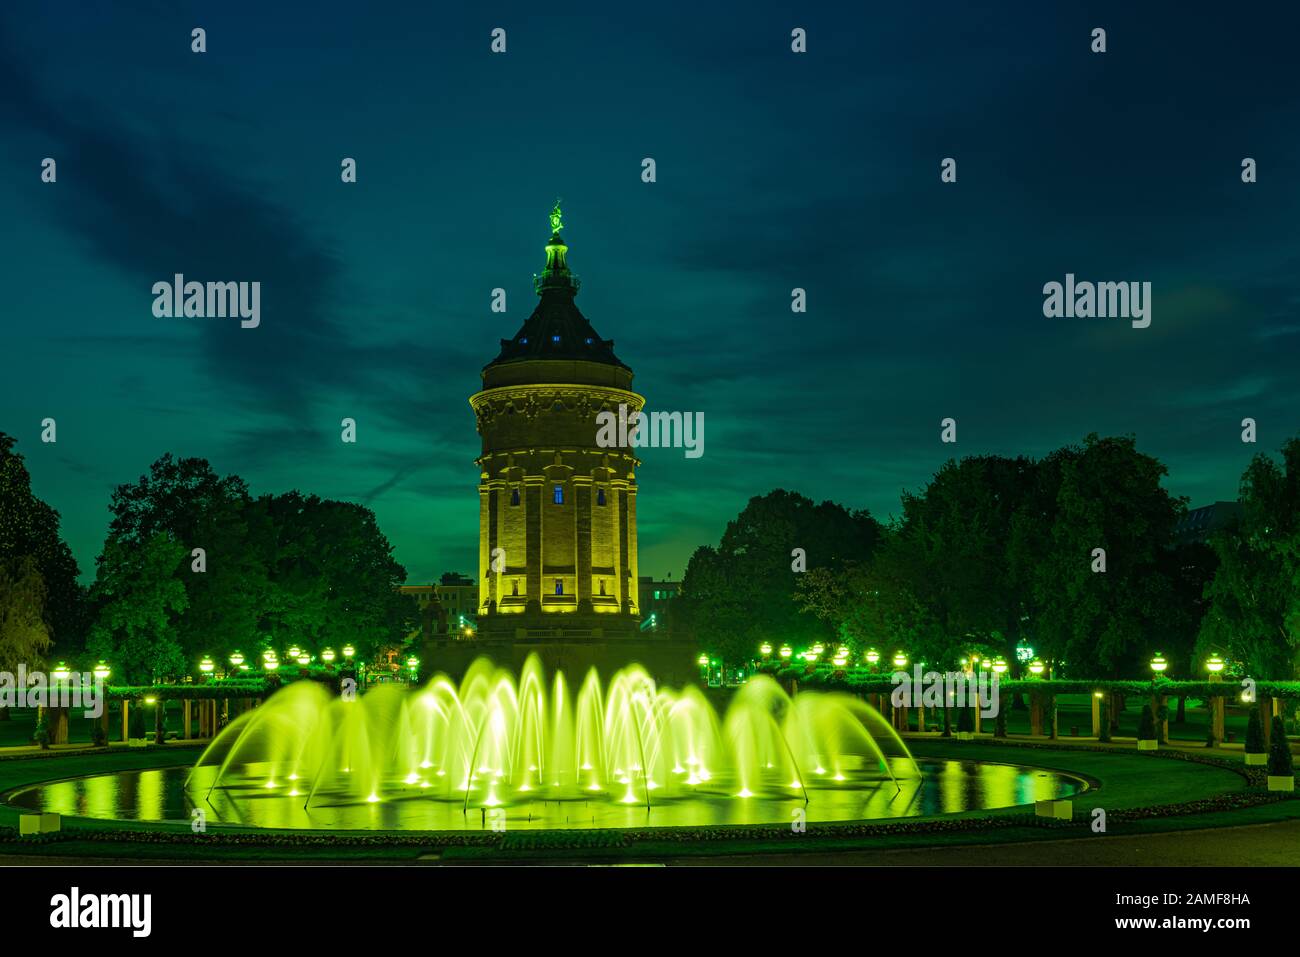 Mannheim - Wasserturm im Park mit nächtlicher Beleuchtung Stockfotografie -  Alamy